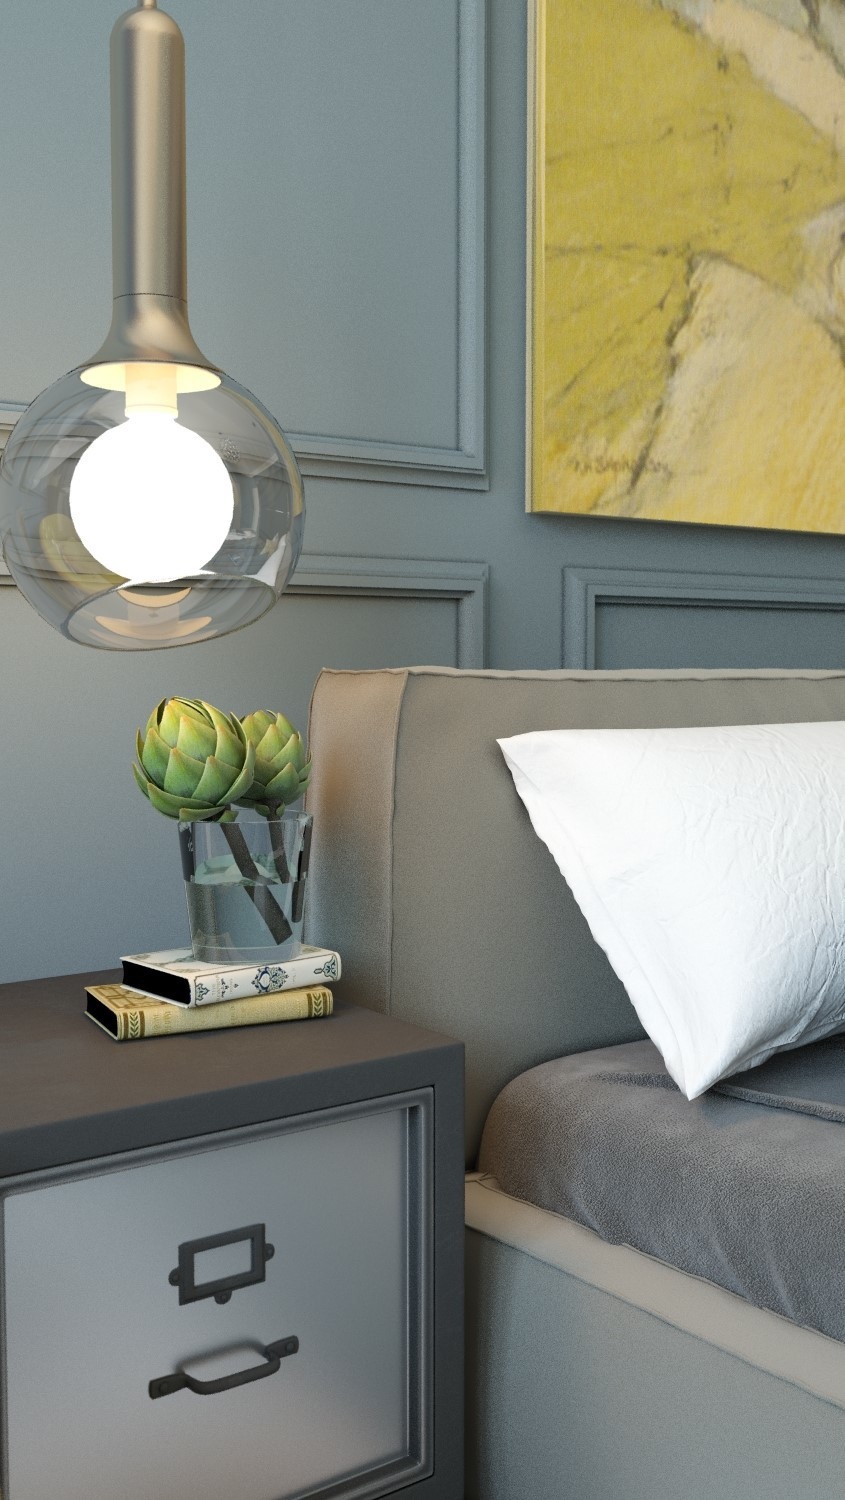 Wedo thiết kế nội thất phòng ngủ sáng tạo cho nhà đẹp với màu vàng tinh tế